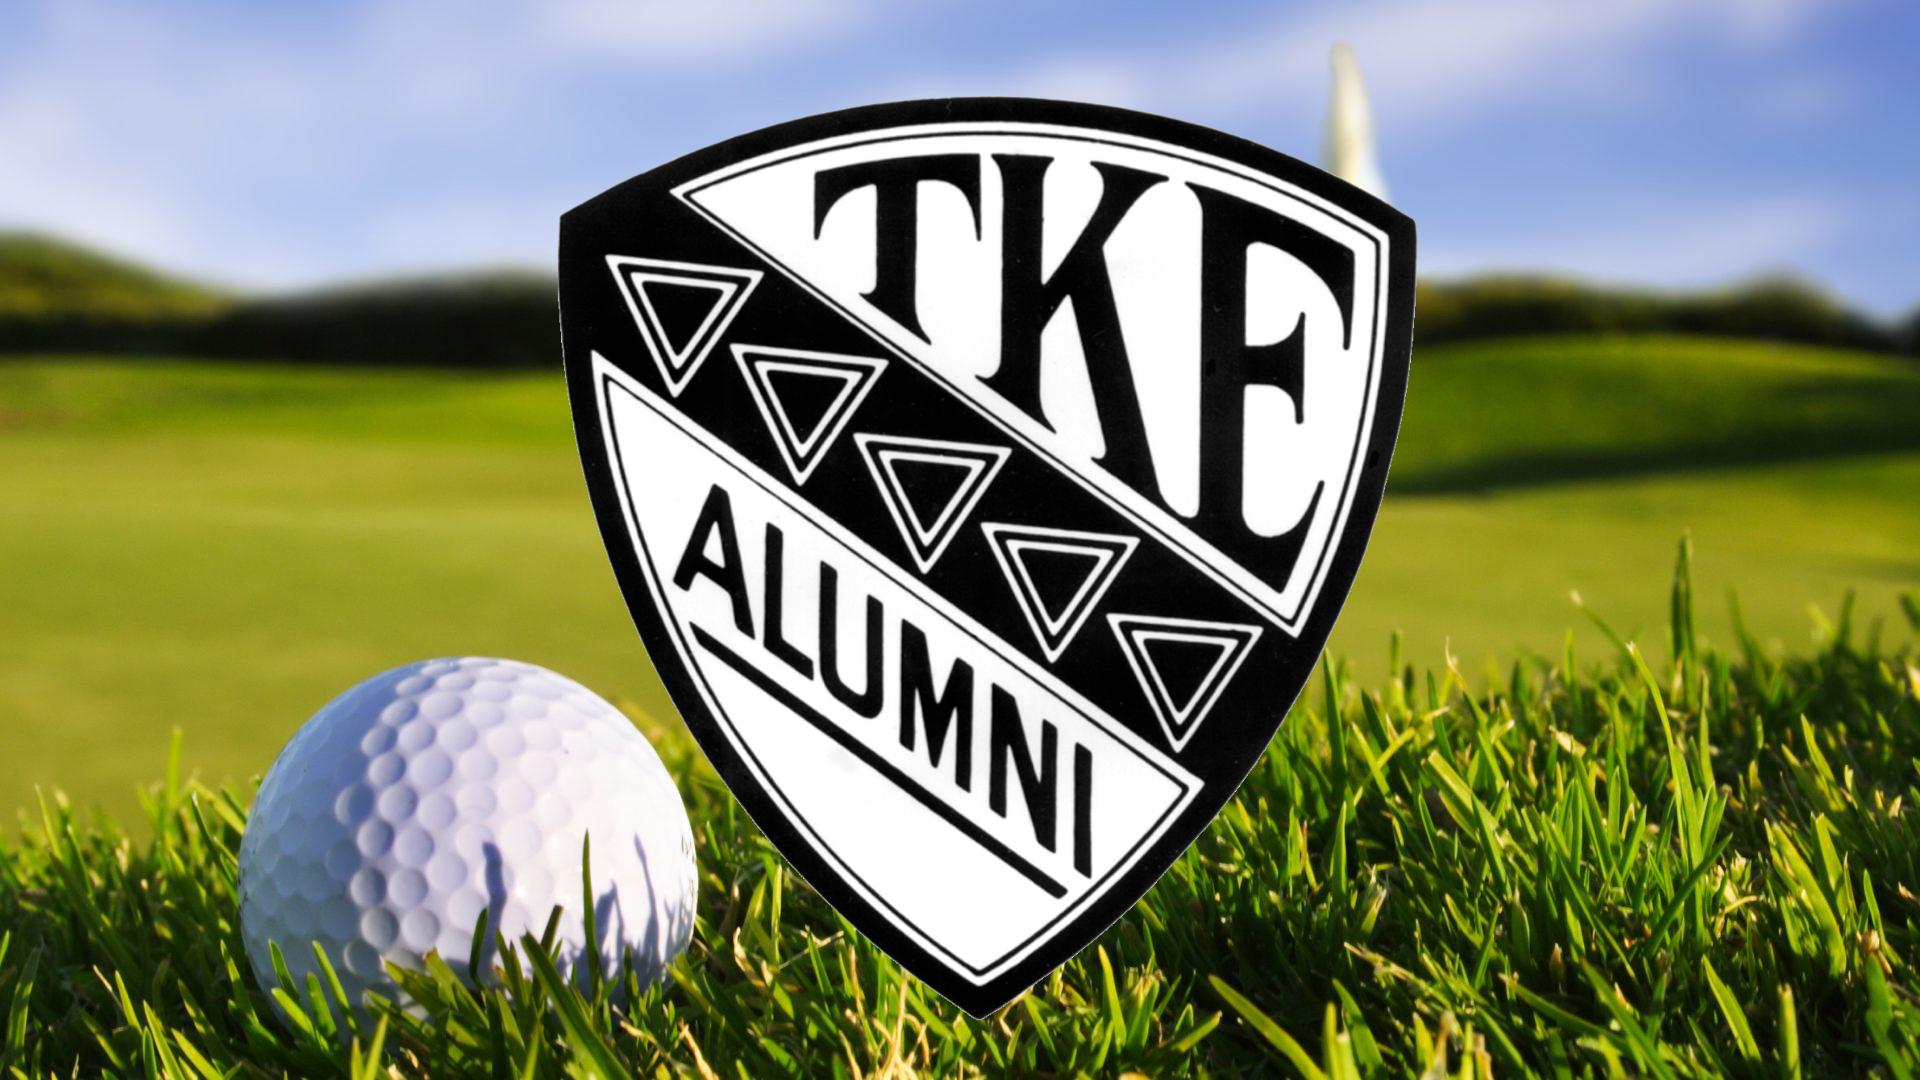 TKE Delta-Eta Alumni Golf Outing